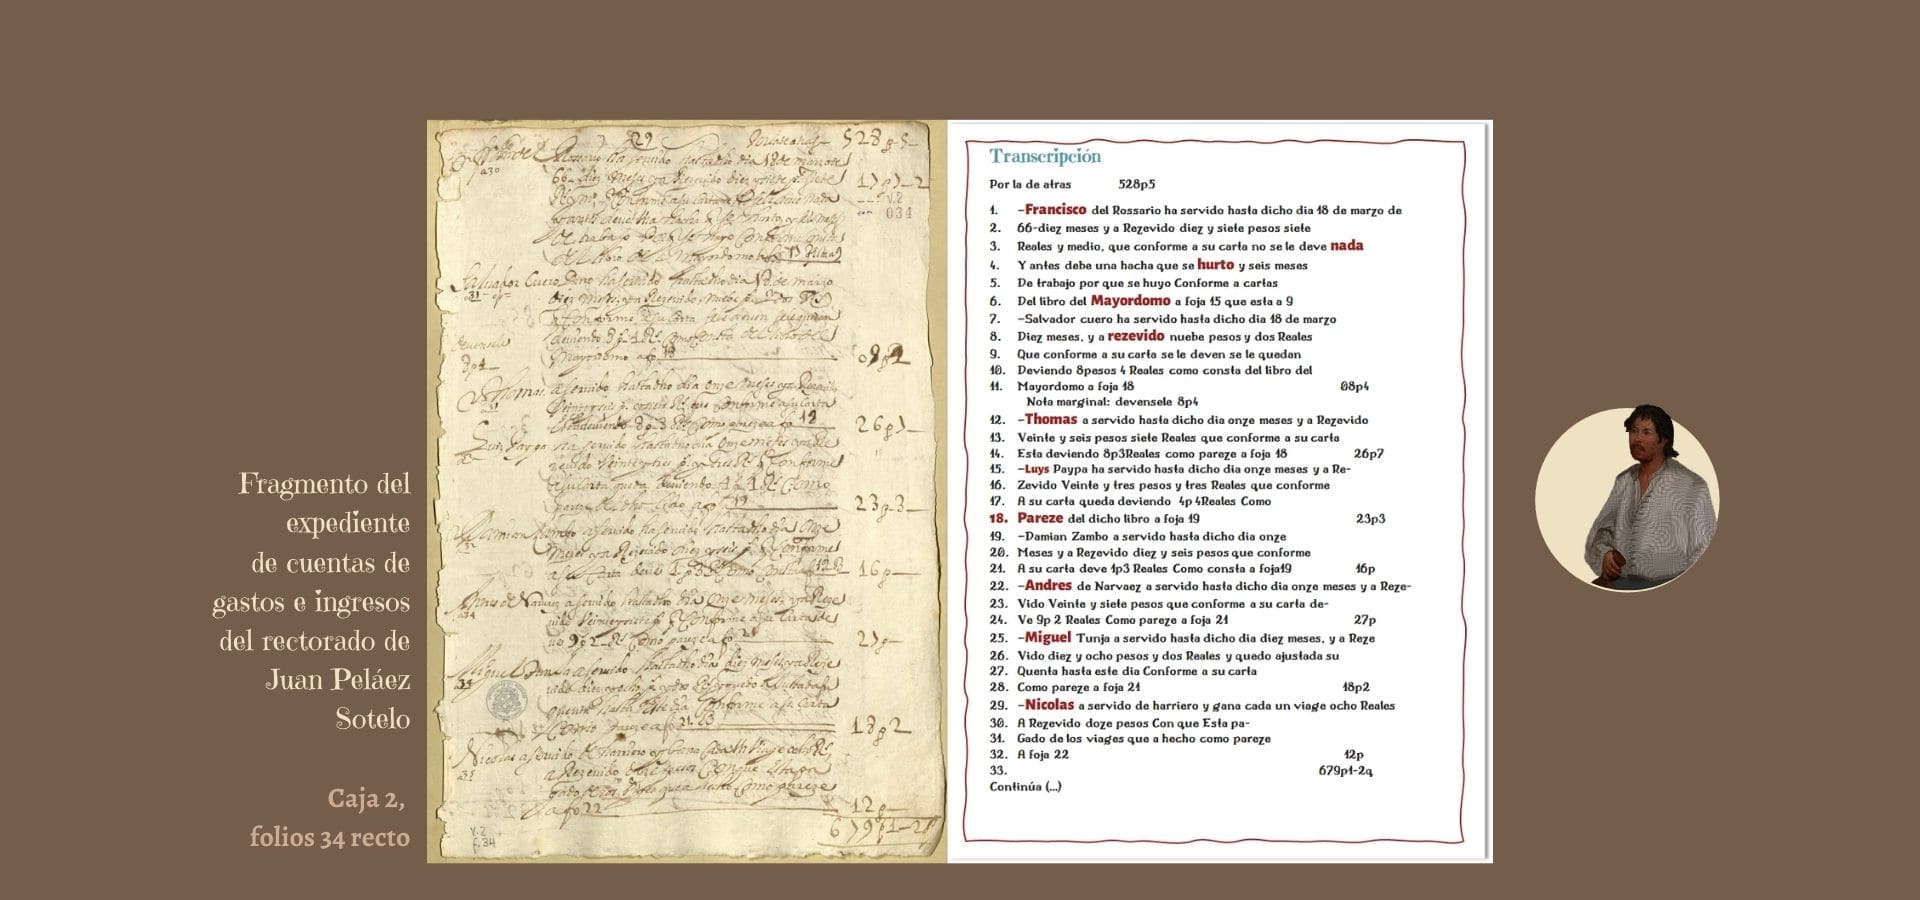 Transcripción folio34 r